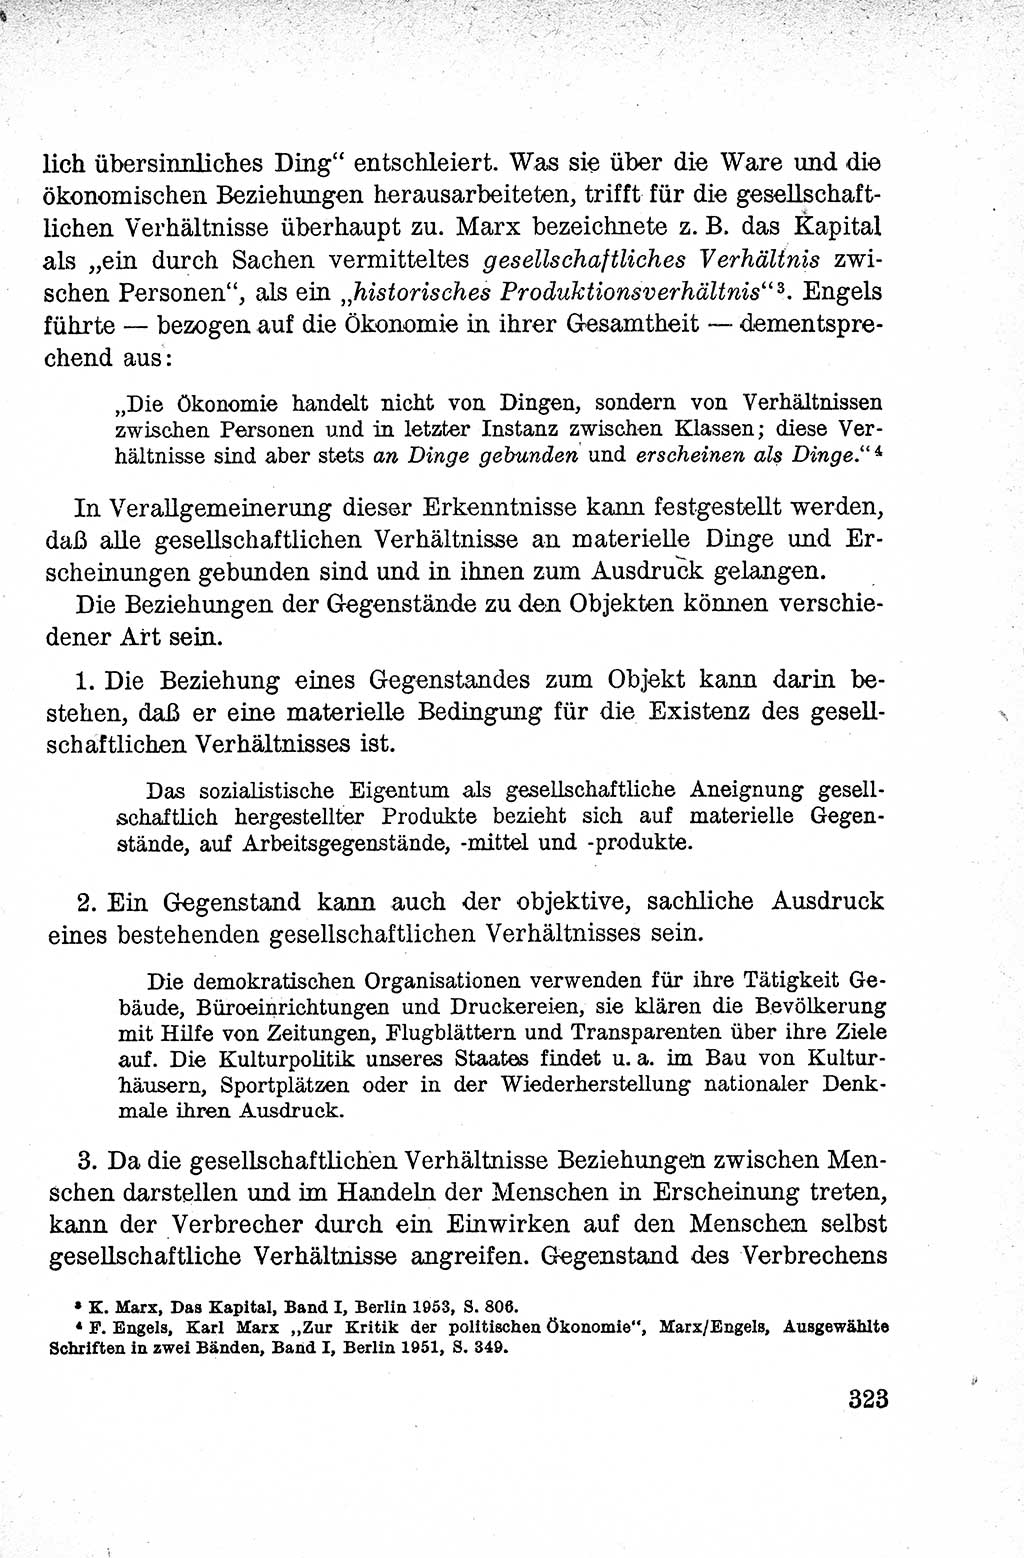 Lehrbuch des Strafrechts der Deutschen Demokratischen Republik (DDR), Allgemeiner Teil 1959, Seite 323 (Lb. Strafr. DDR AT 1959, S. 323)